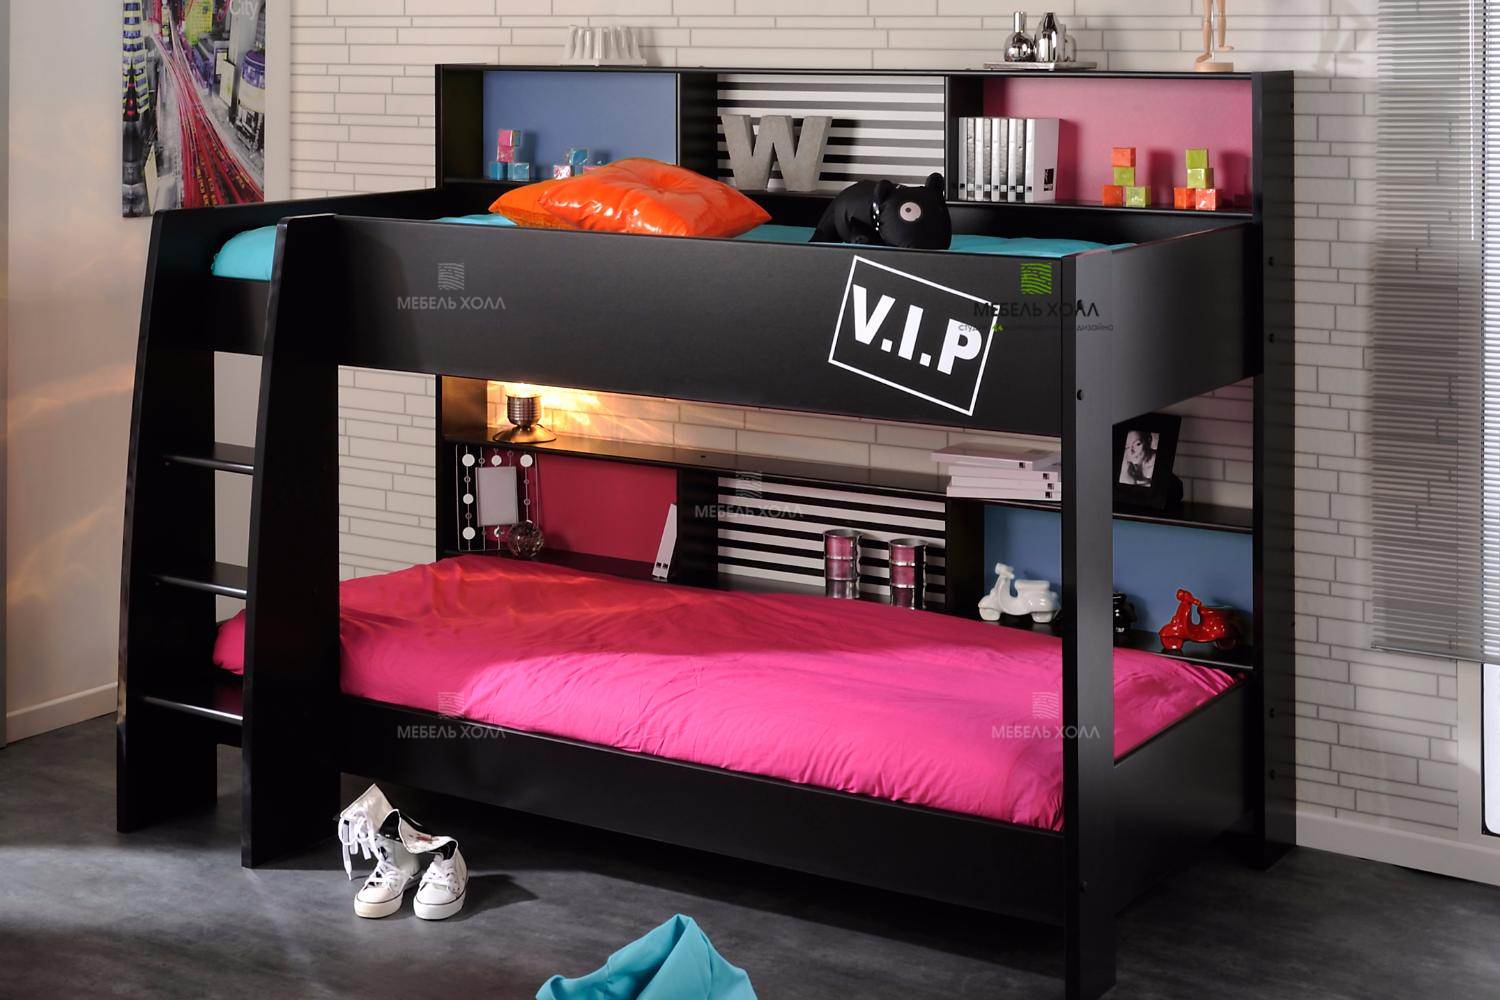 Двухъярусная кровать в черном цвете из высококачественного ДСП, на каждом уровне имеет свою небольшую эргономичную зону из полок